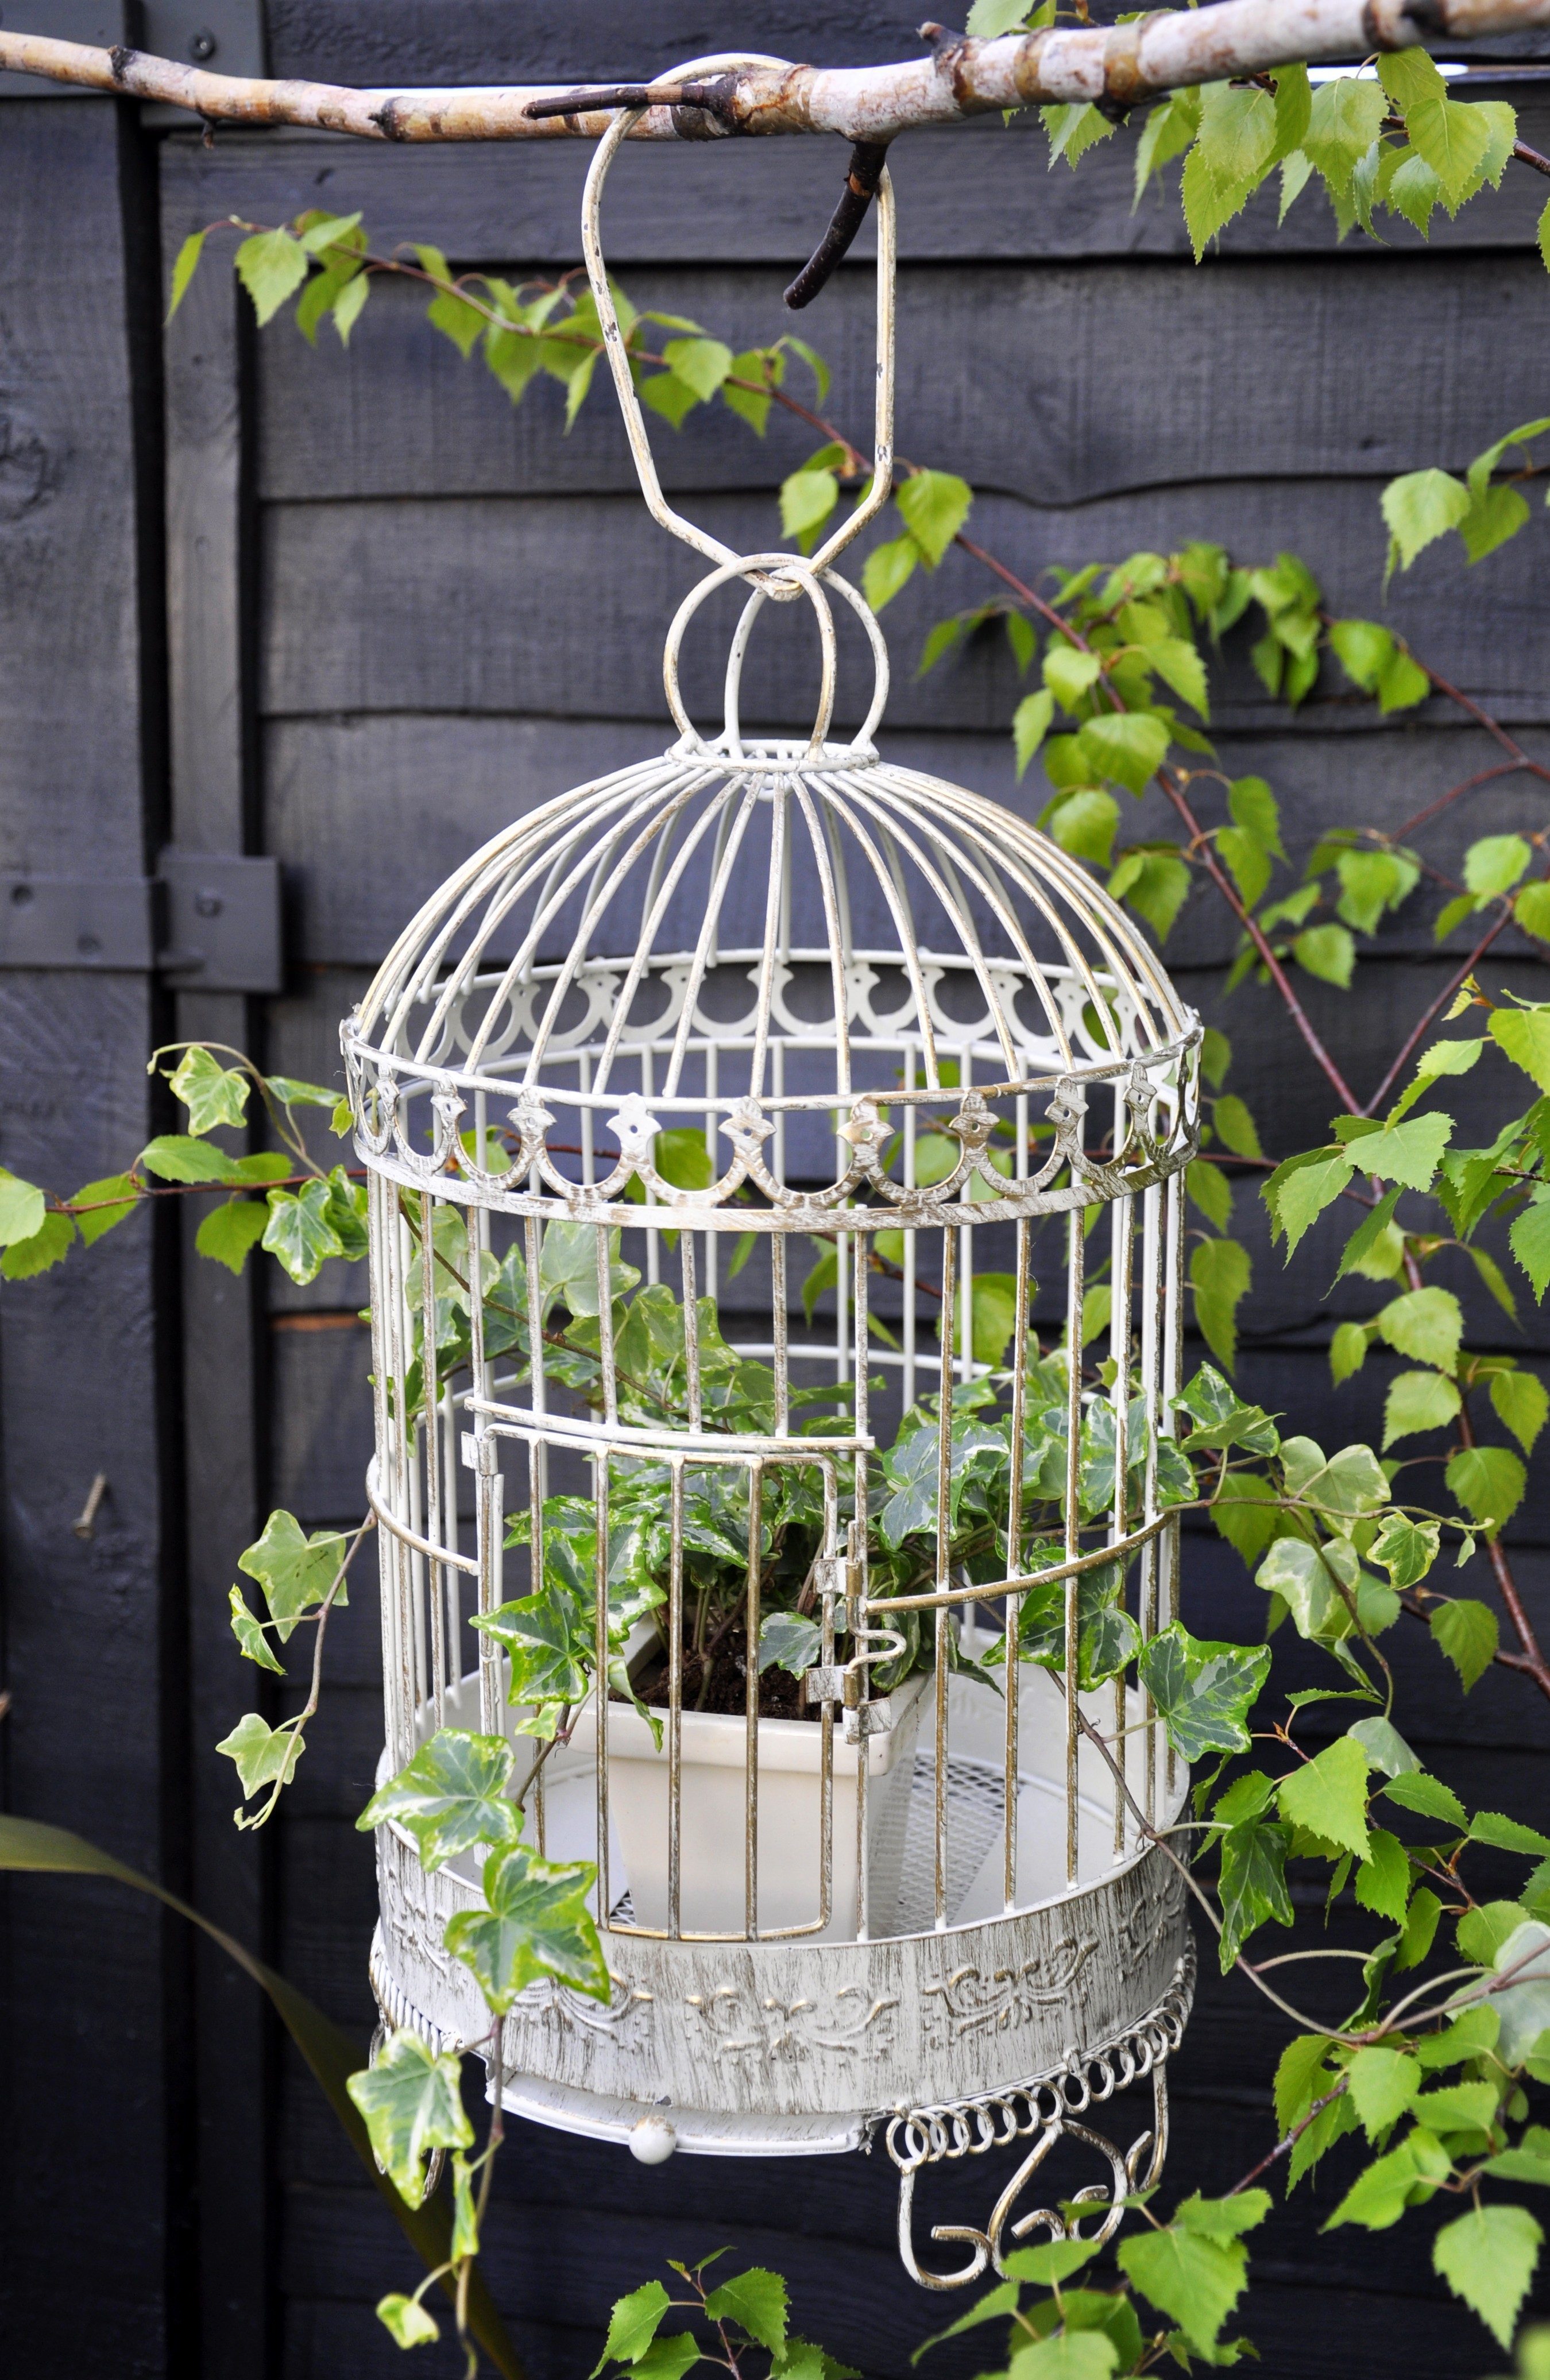 cage bird garden planters catching eye decor fun